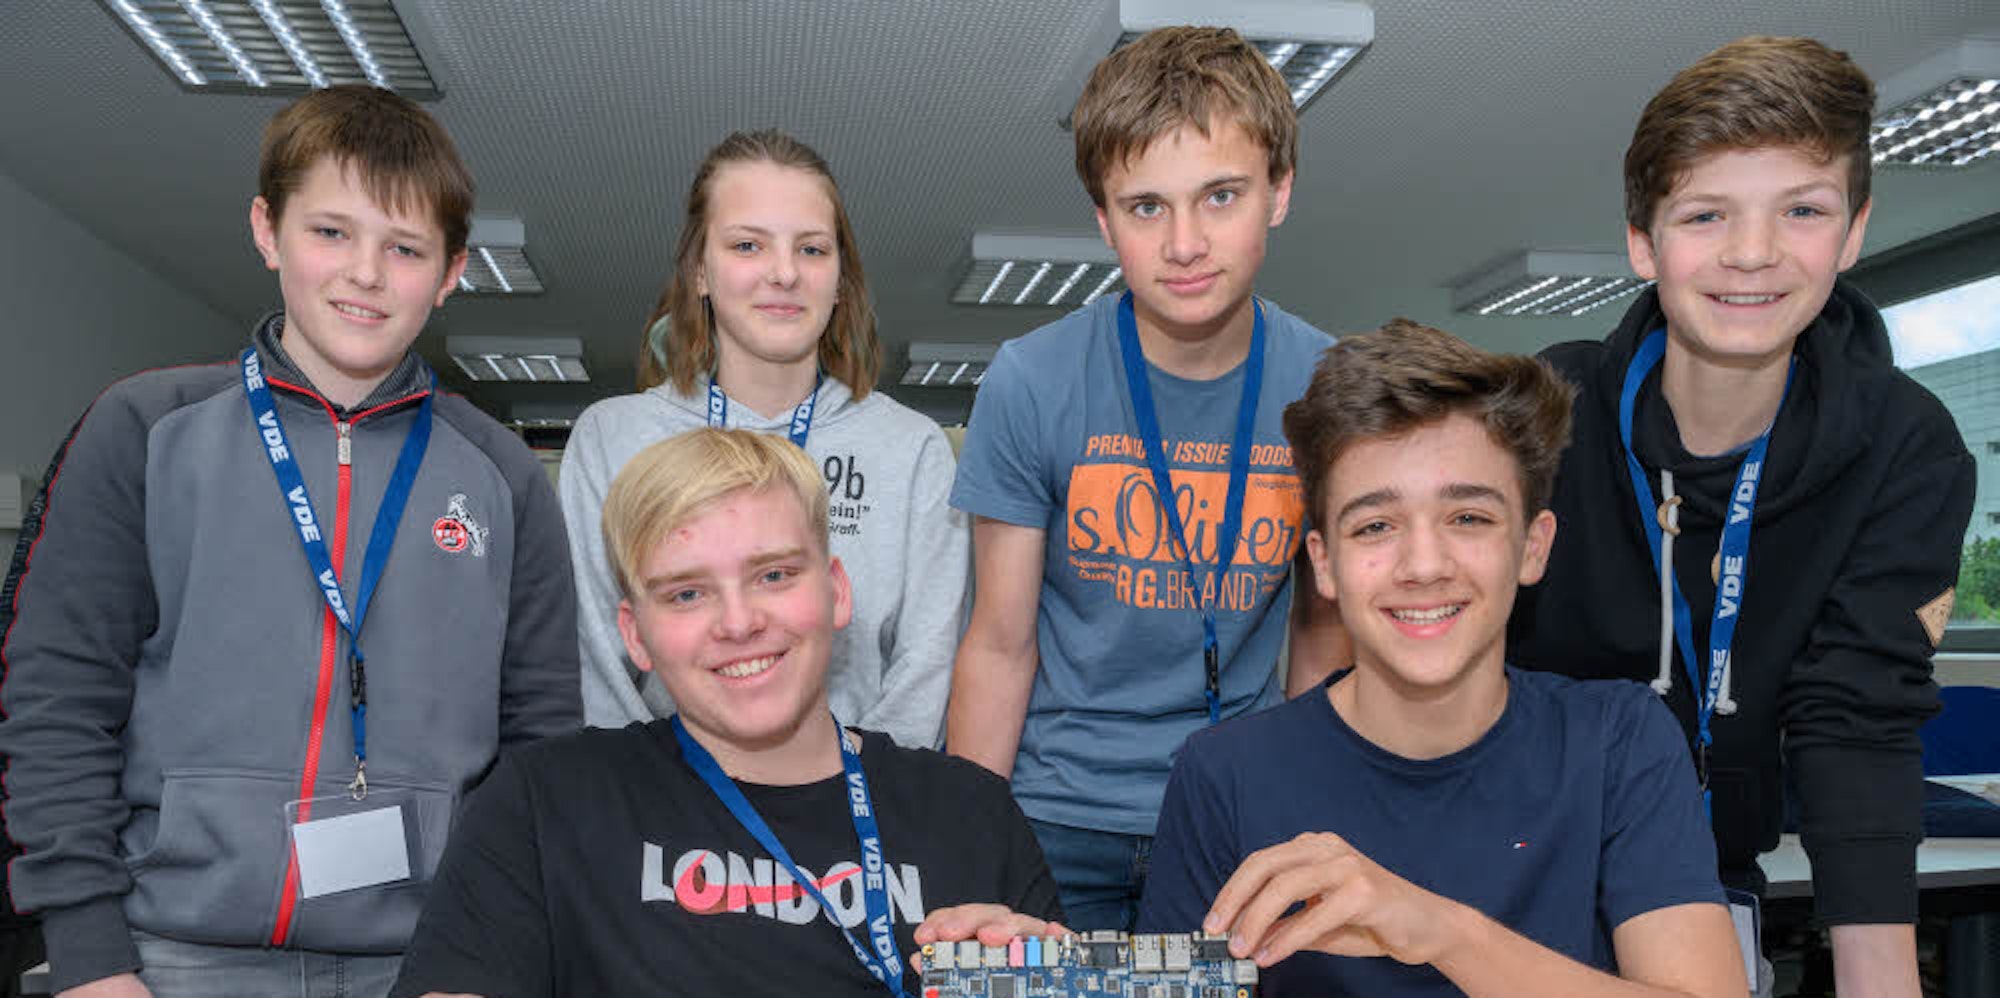 Die erfolgreichen zwei Schülerteams des Gymnasiums Lindlar mit einem selbst programmierten Chip. Auf dem Foto (v.l.): Tom, Justus, Connor, Tara, Andreas und Fabian.